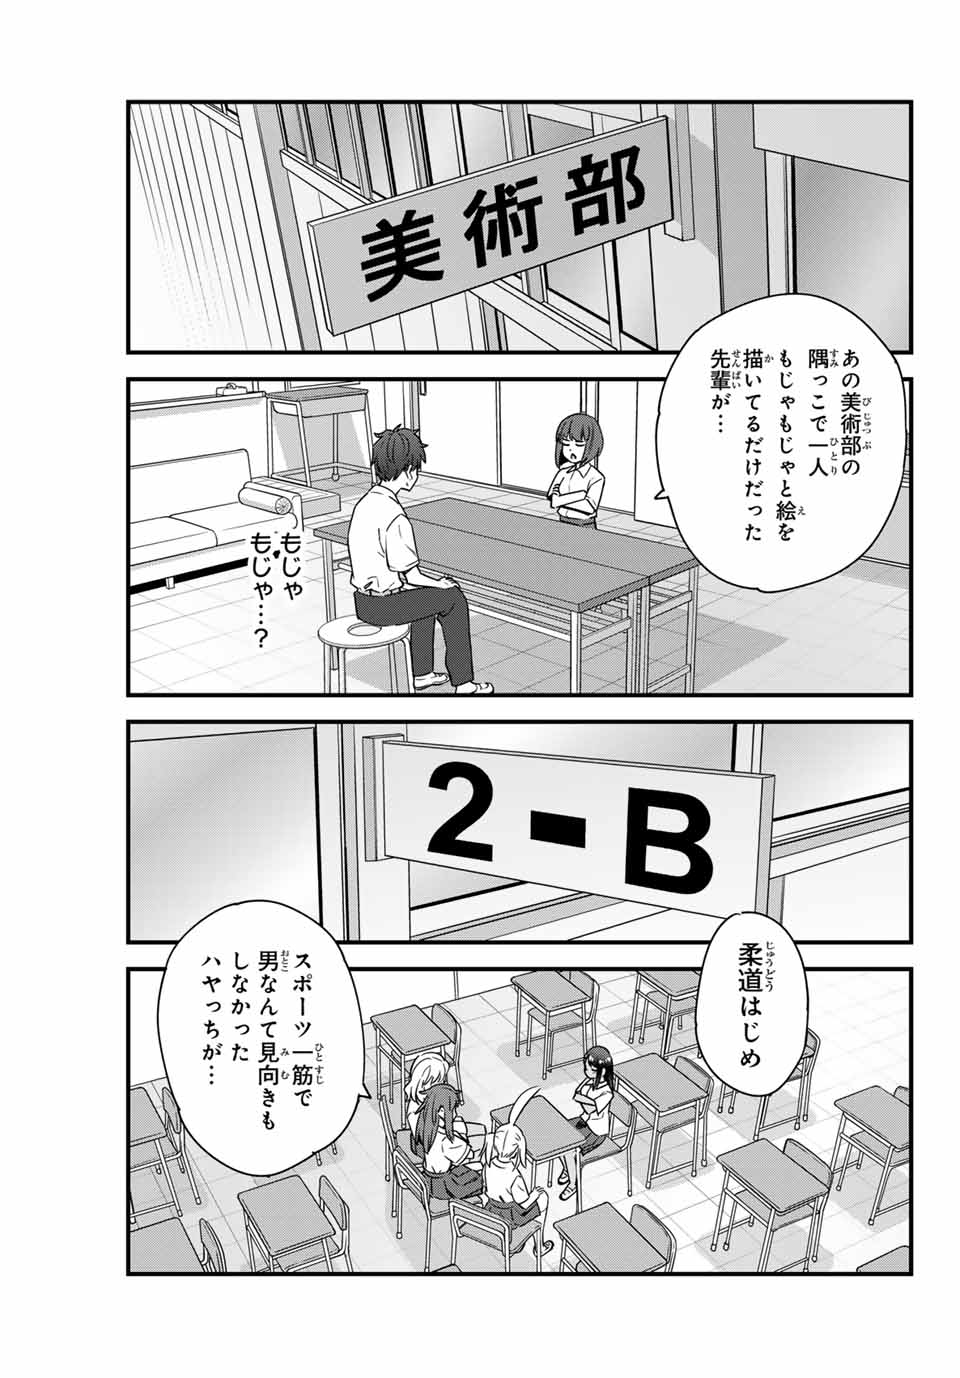 Ijiranaide, Nagatoro-san - Chapter 146 - Page 3